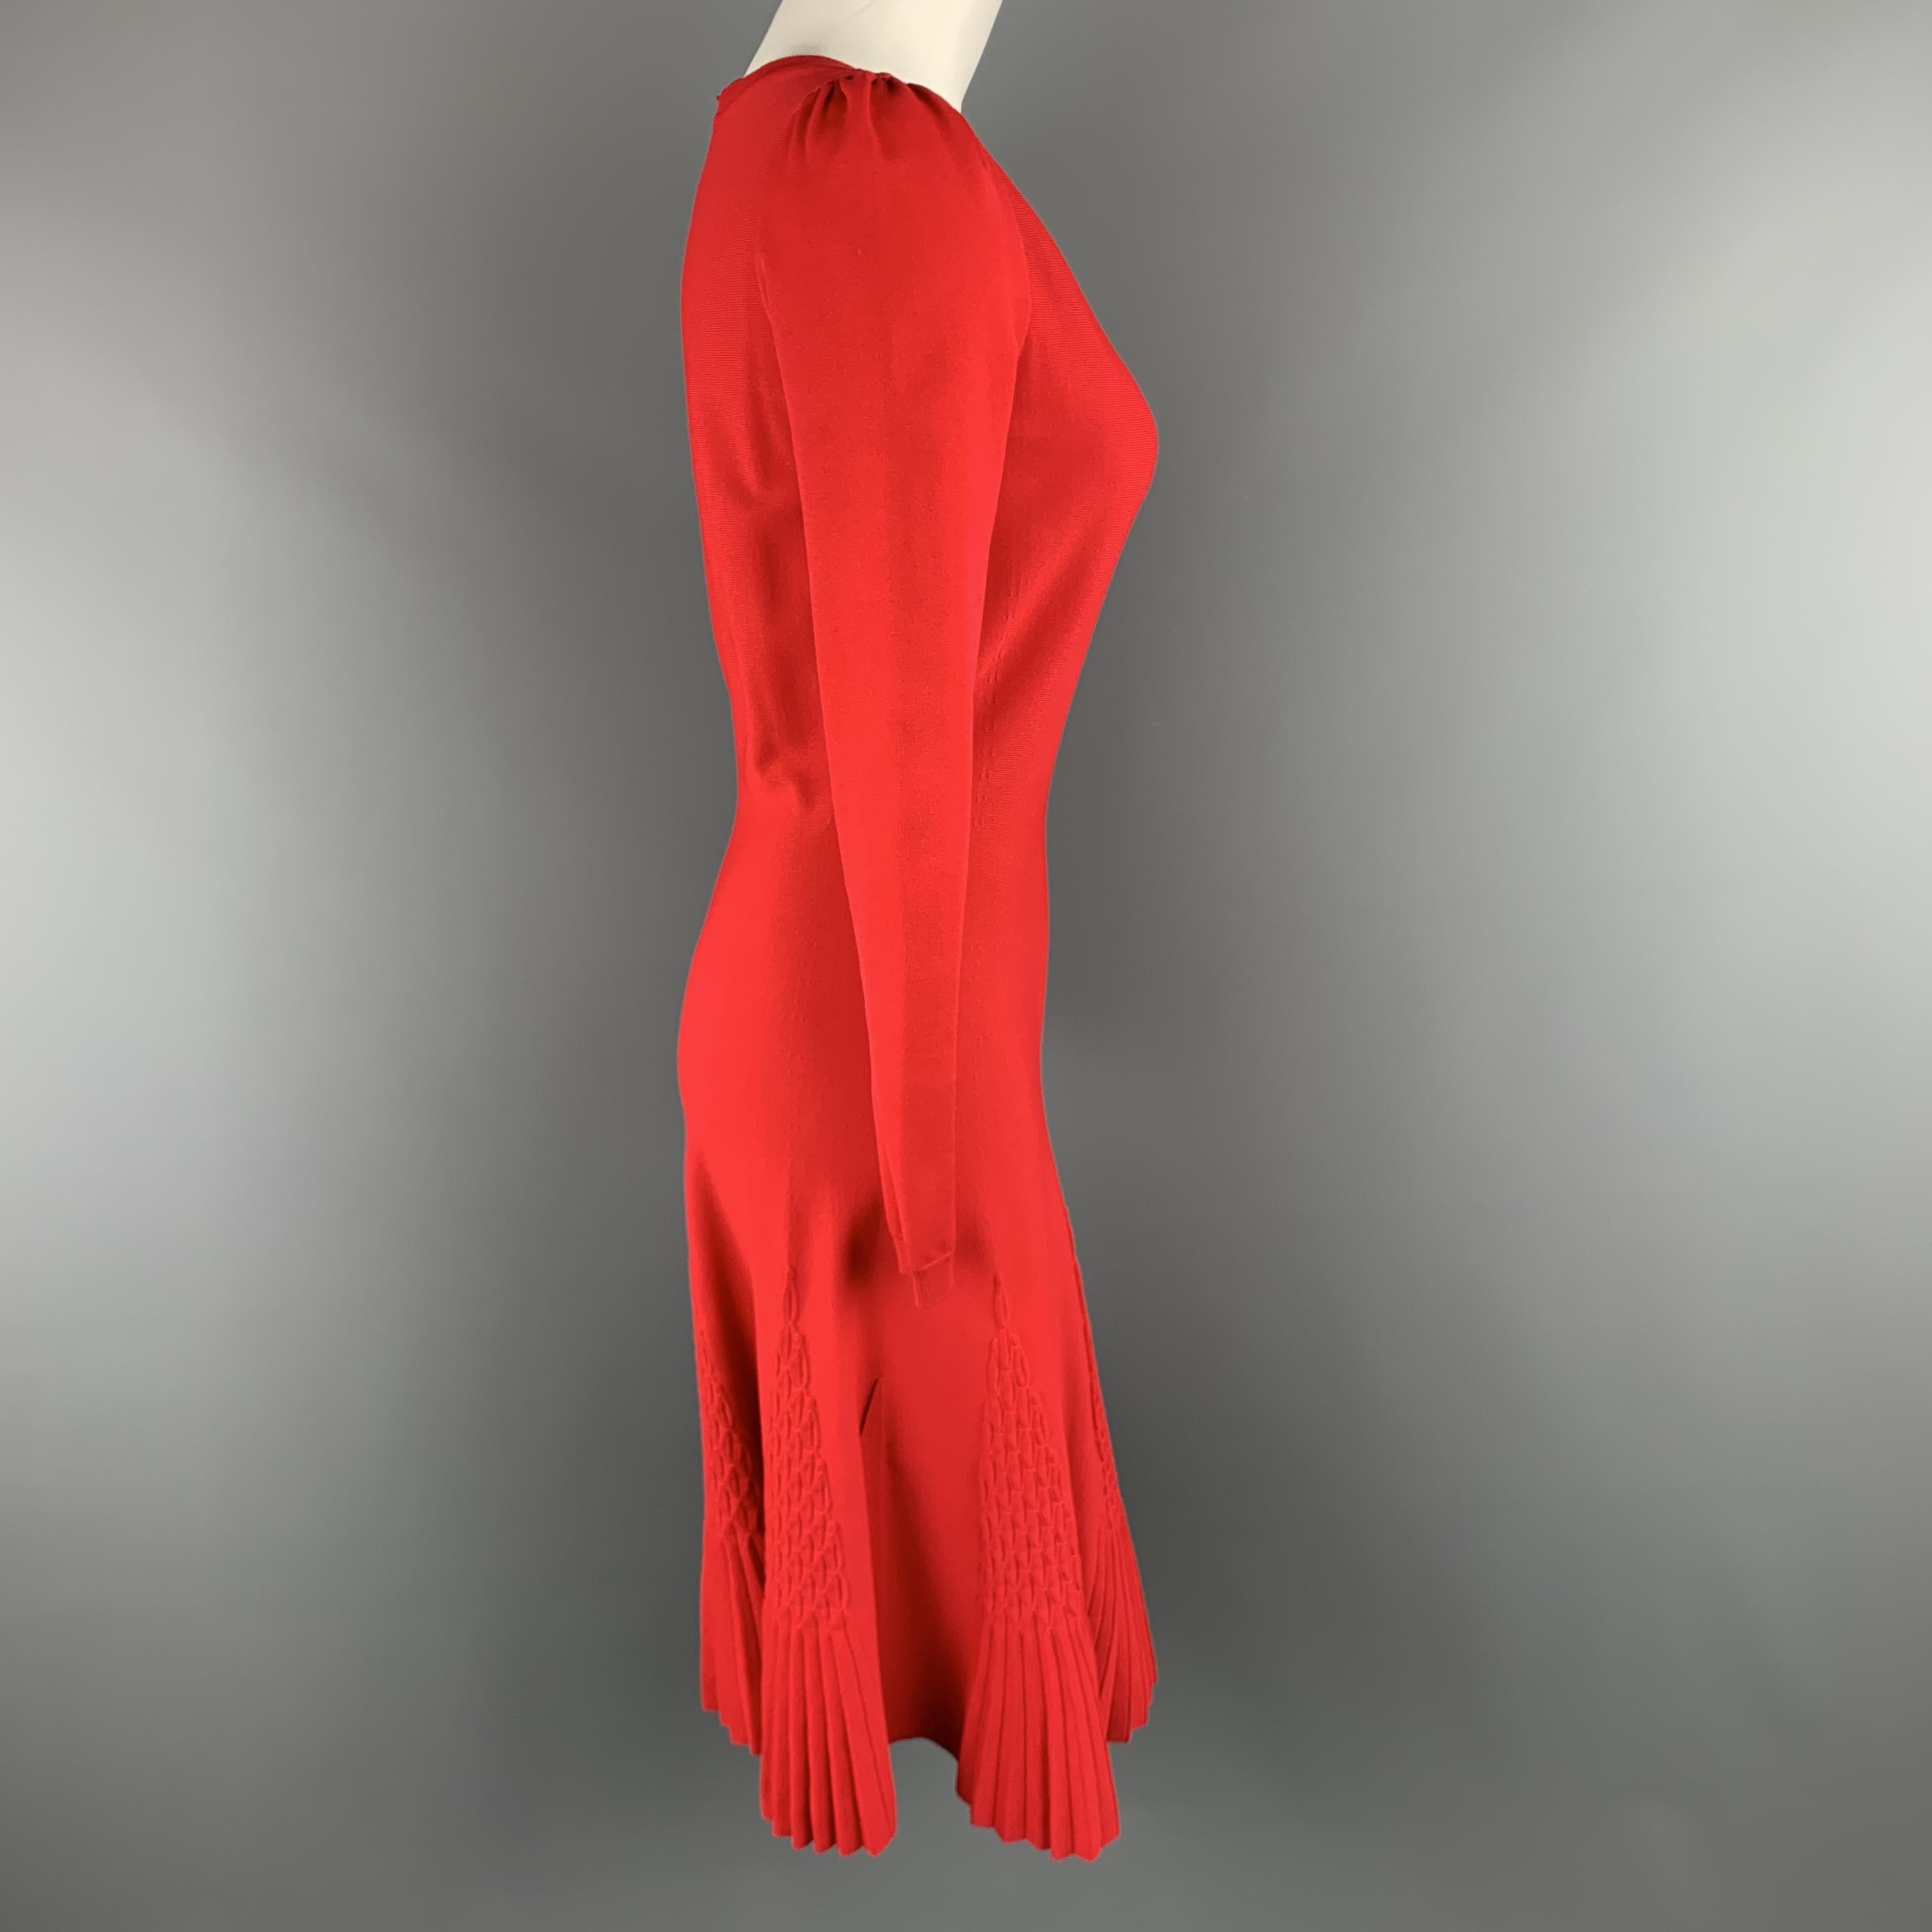 red flare skirt